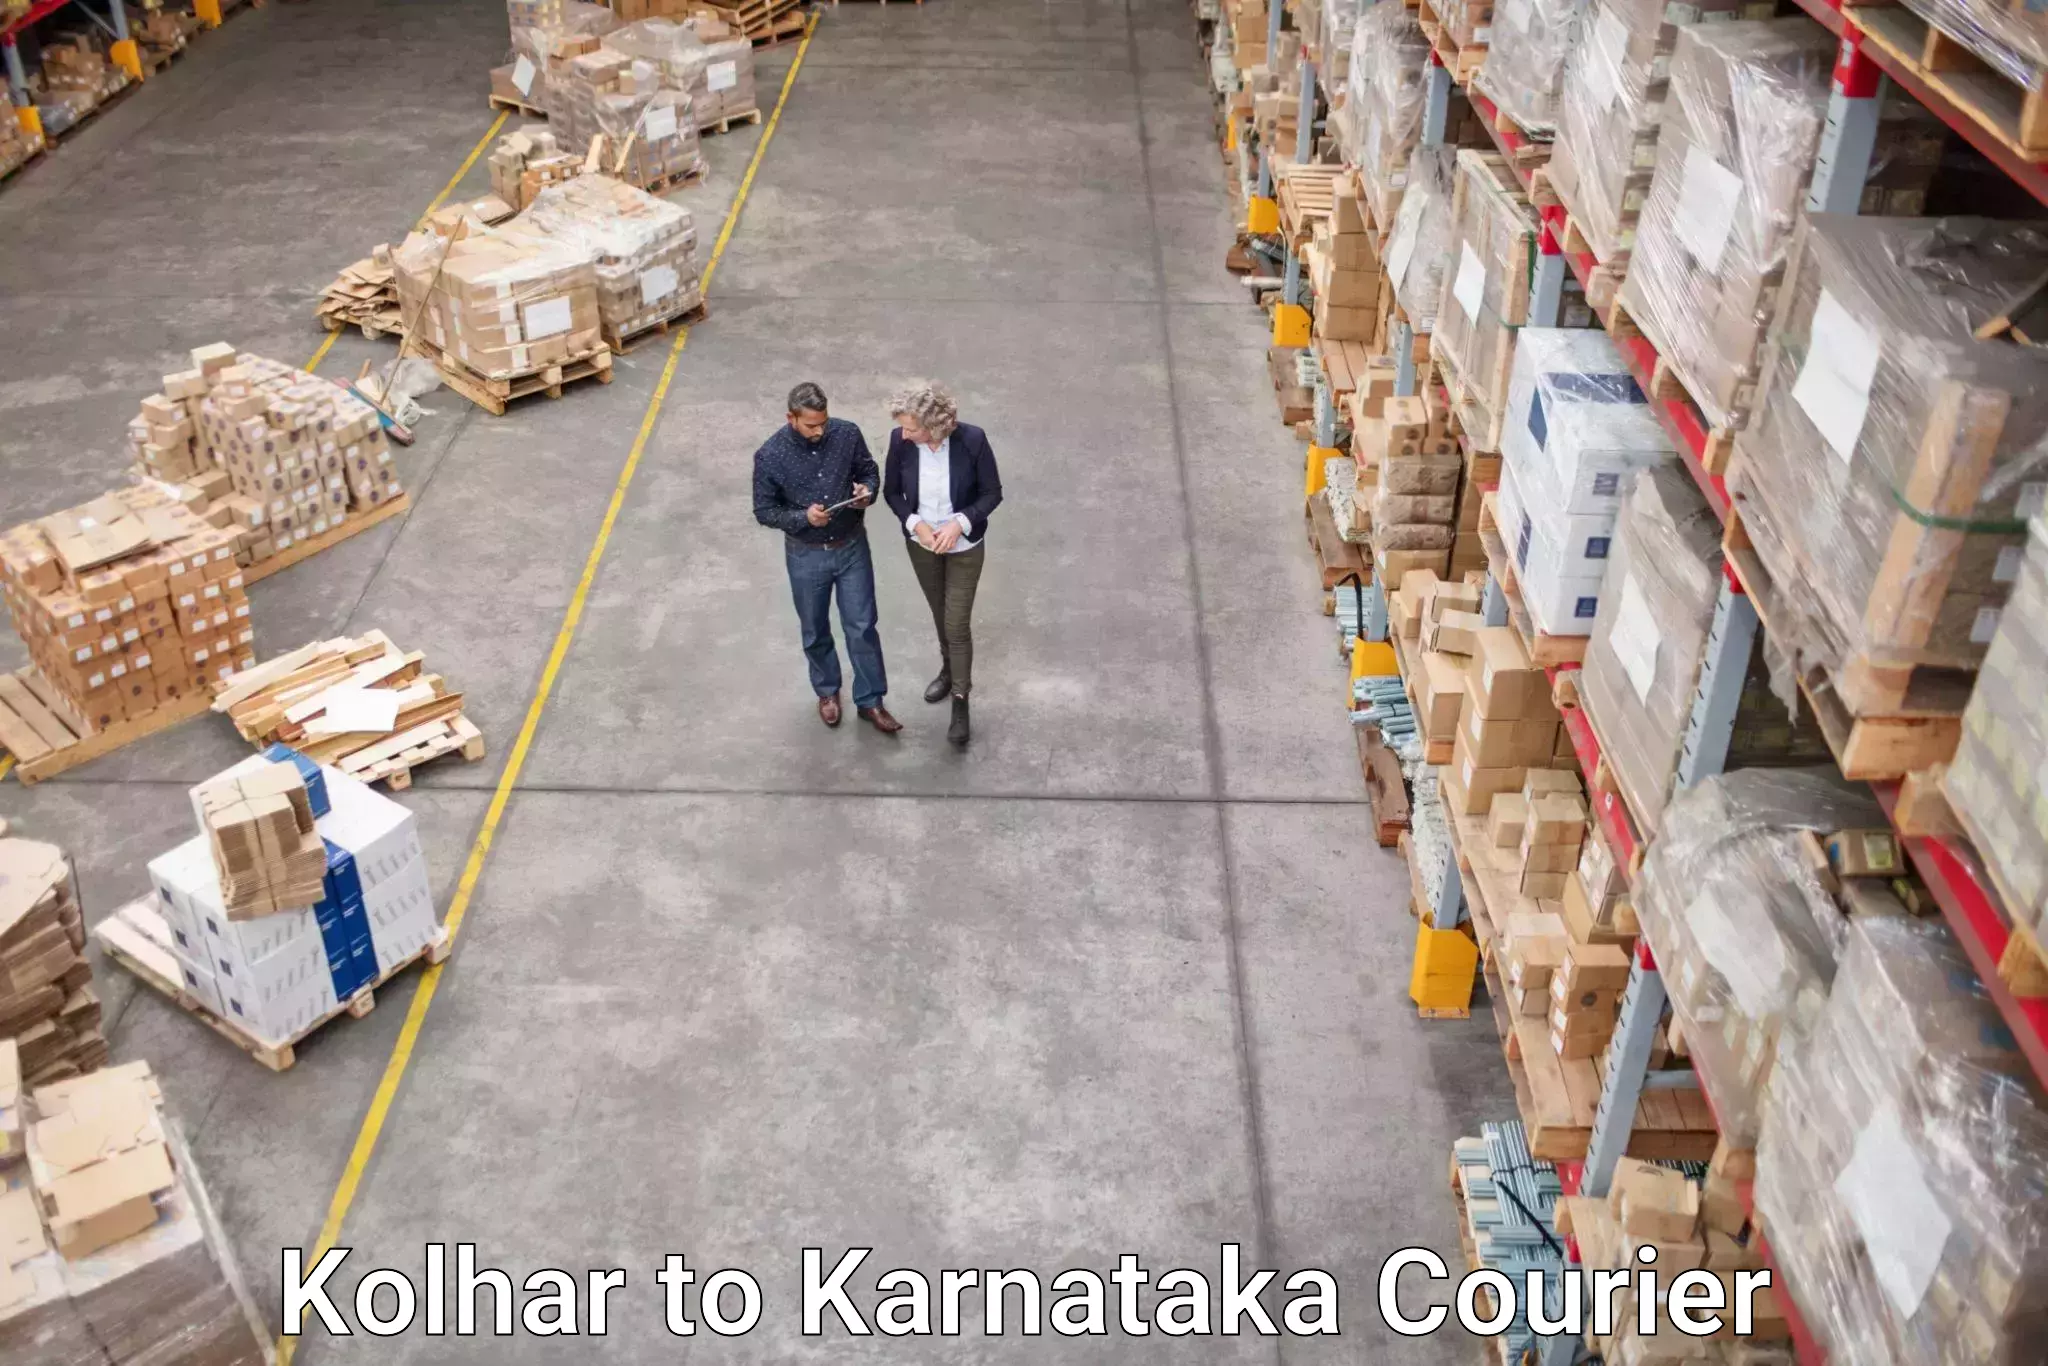 Urgent courier needs Kolhar to Kodagu